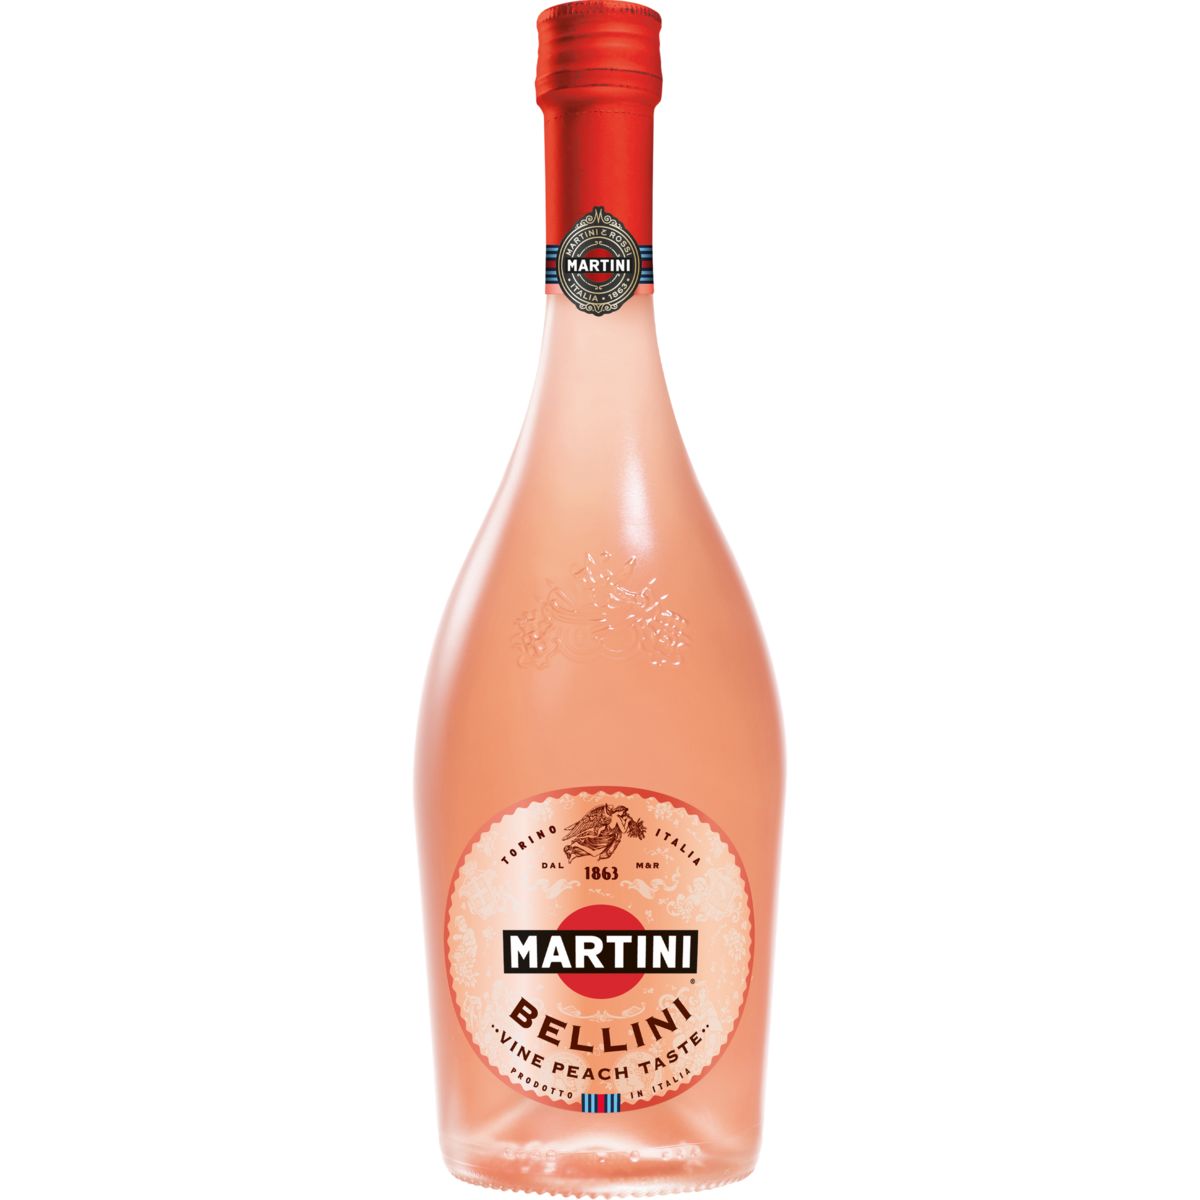 MARTINI Bellini 75cl 8%